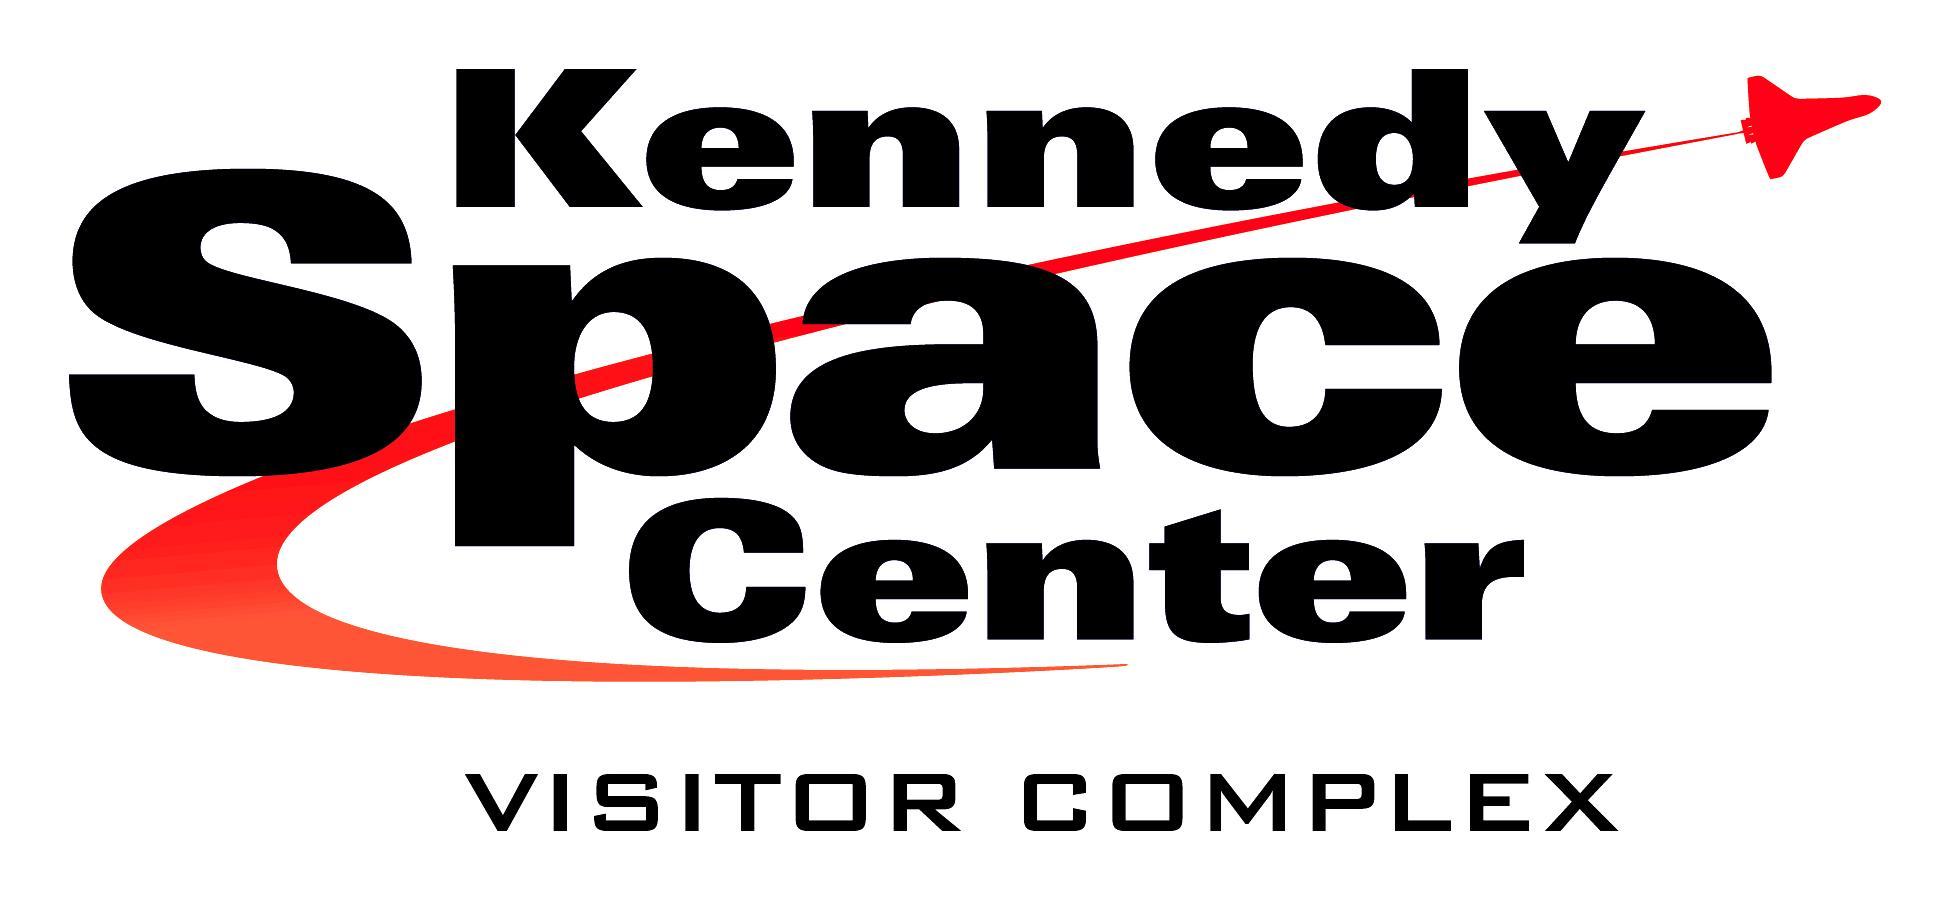 NASA Center Logo - Kennedy space center Logos